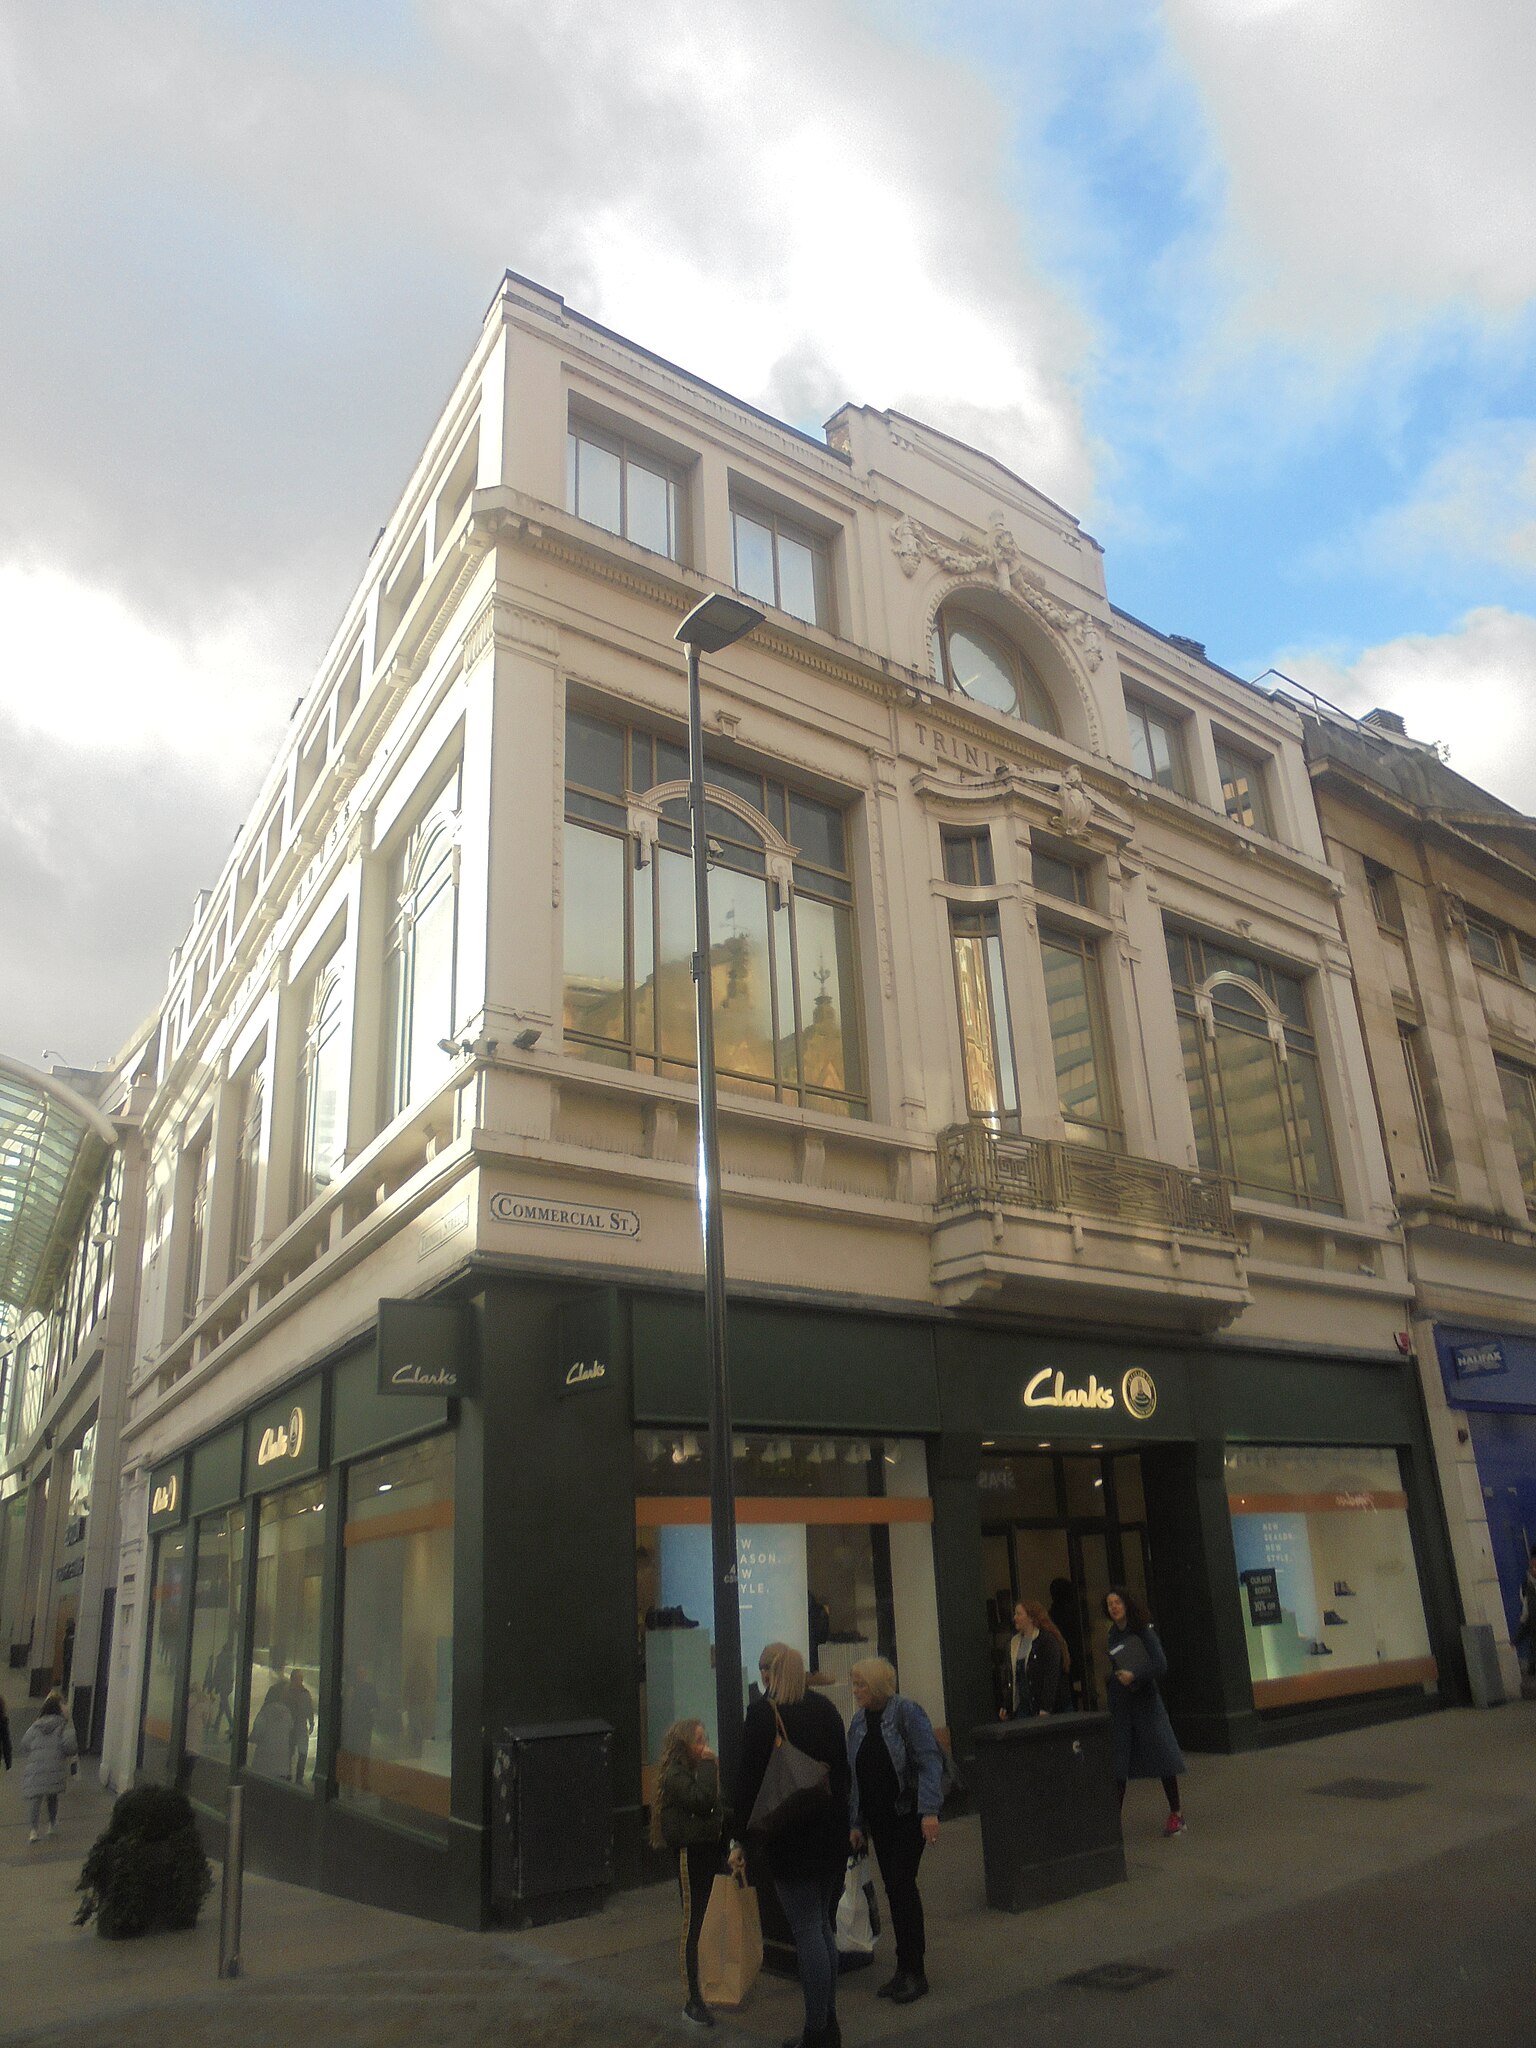 File:Clarks, Commercial Street, Leeds 2020).jpg Wikimedia